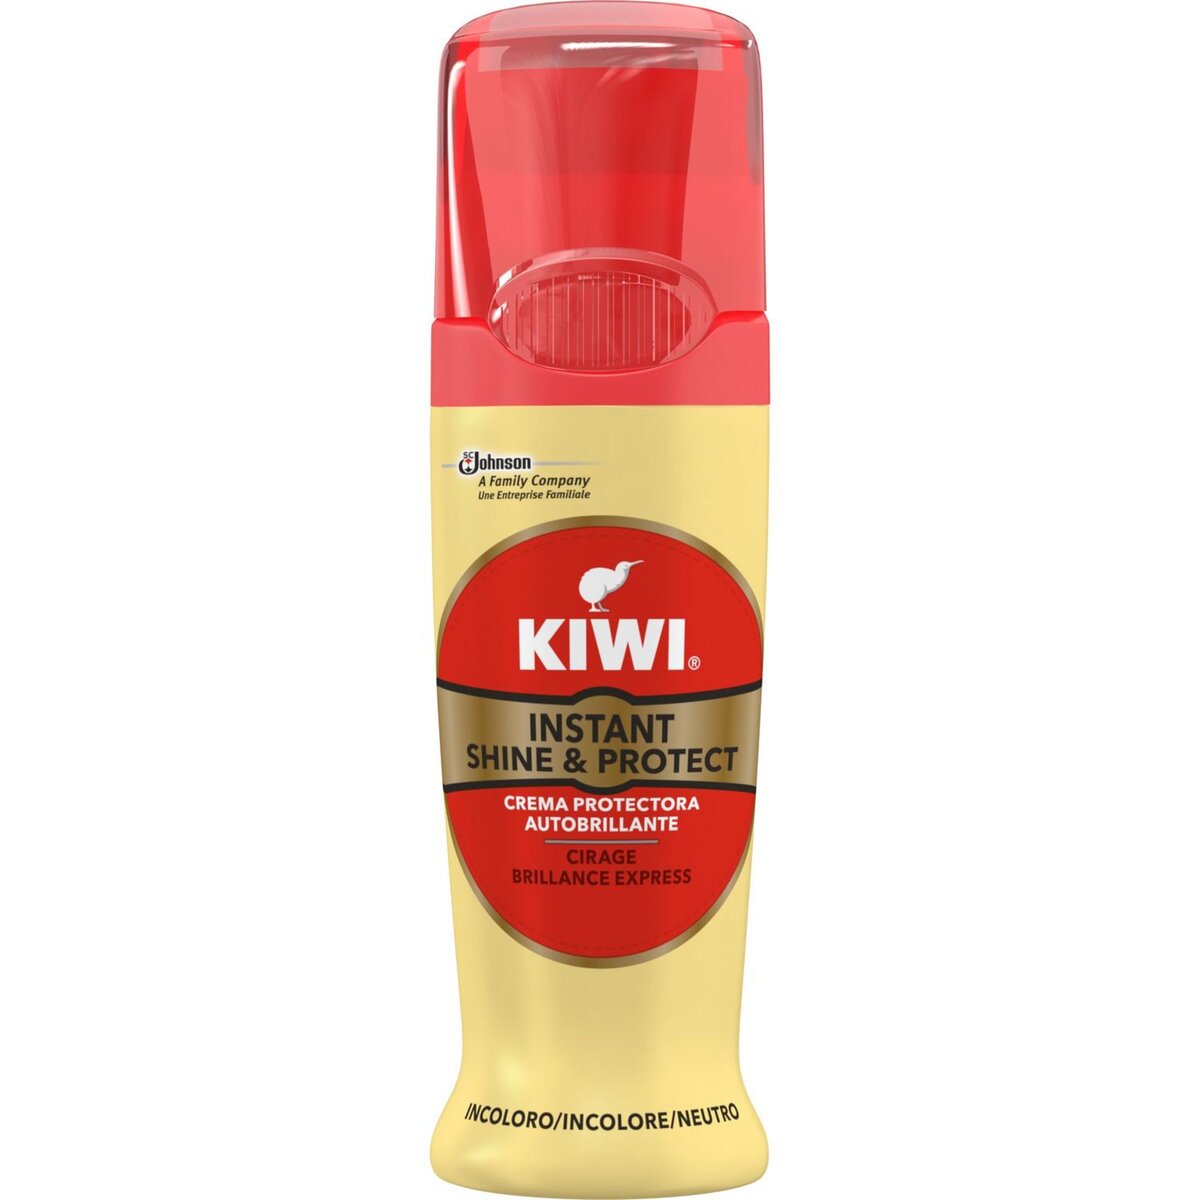 KIWI Shine and Protect cirage brillance express incolore 75ml